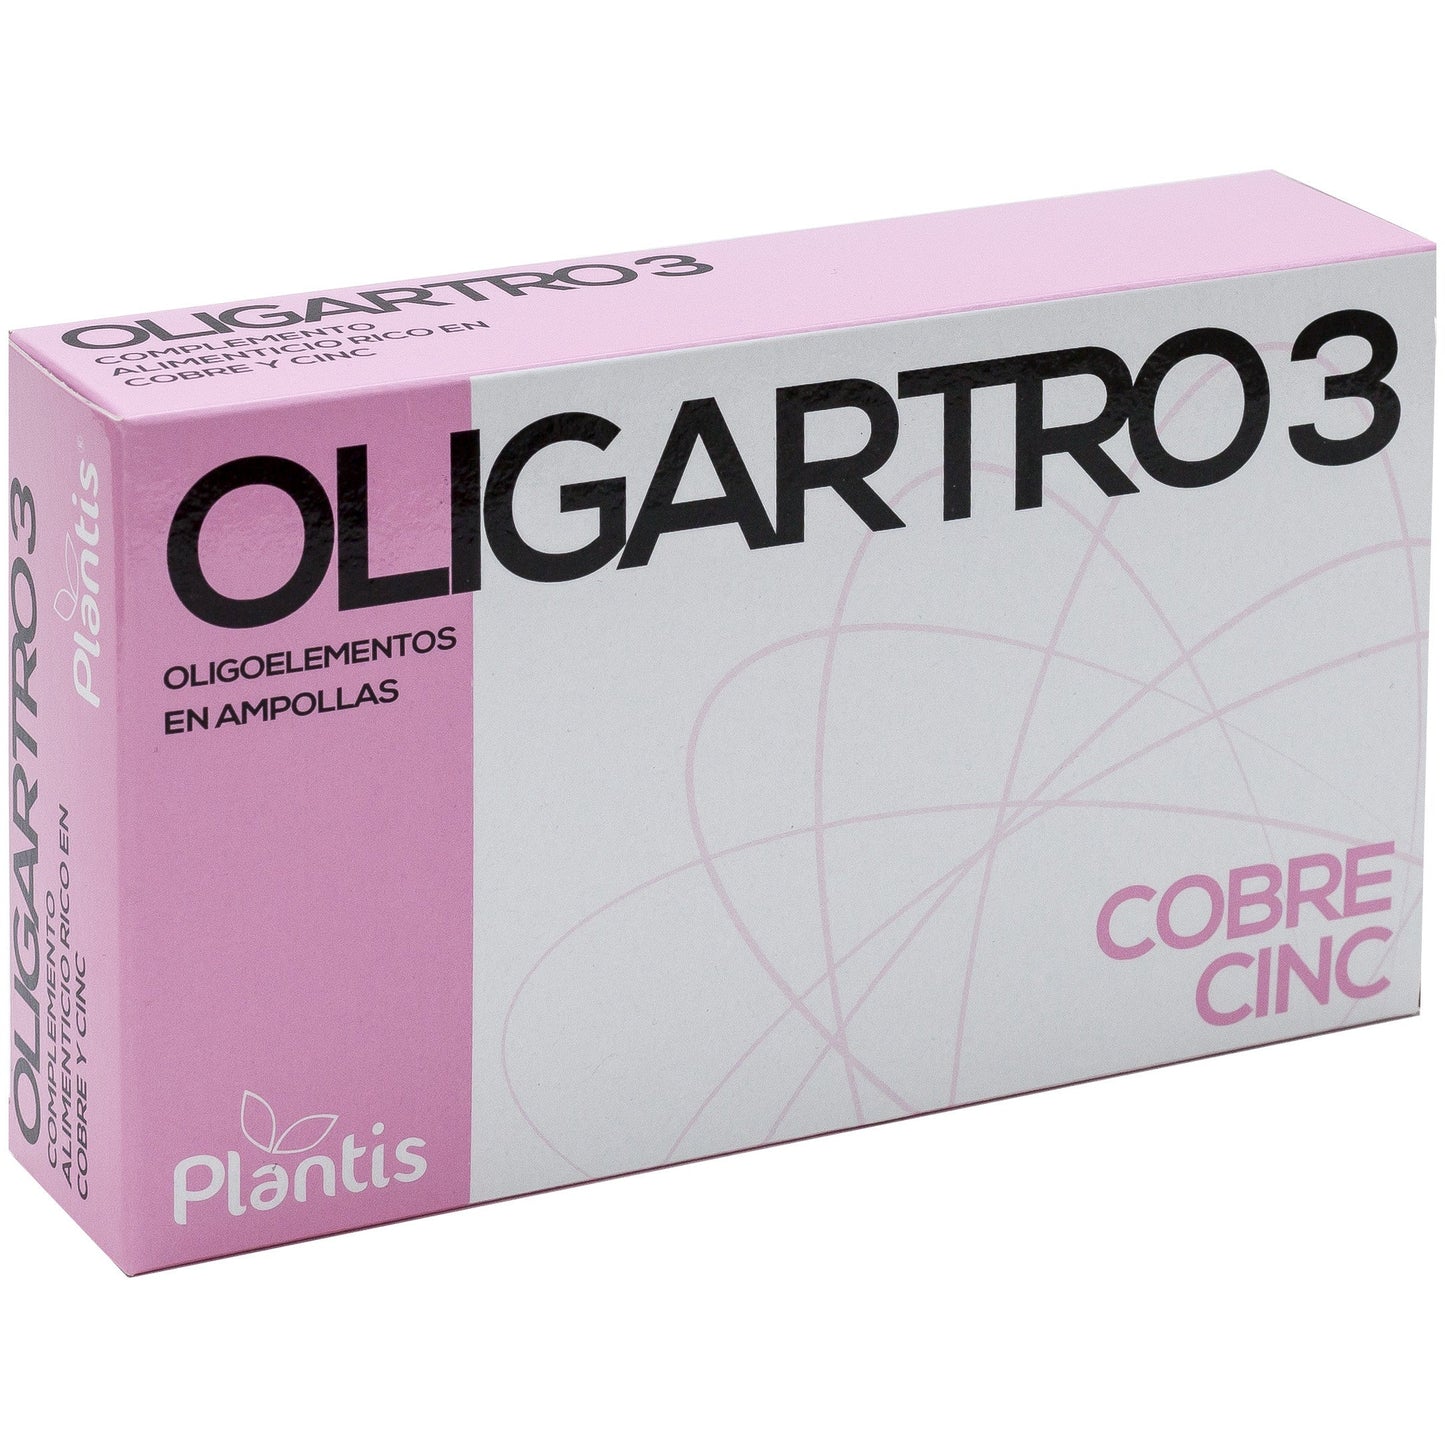 Oligartro-3 20 ampollas | Artesania Agricola - Dietetica Ferrer